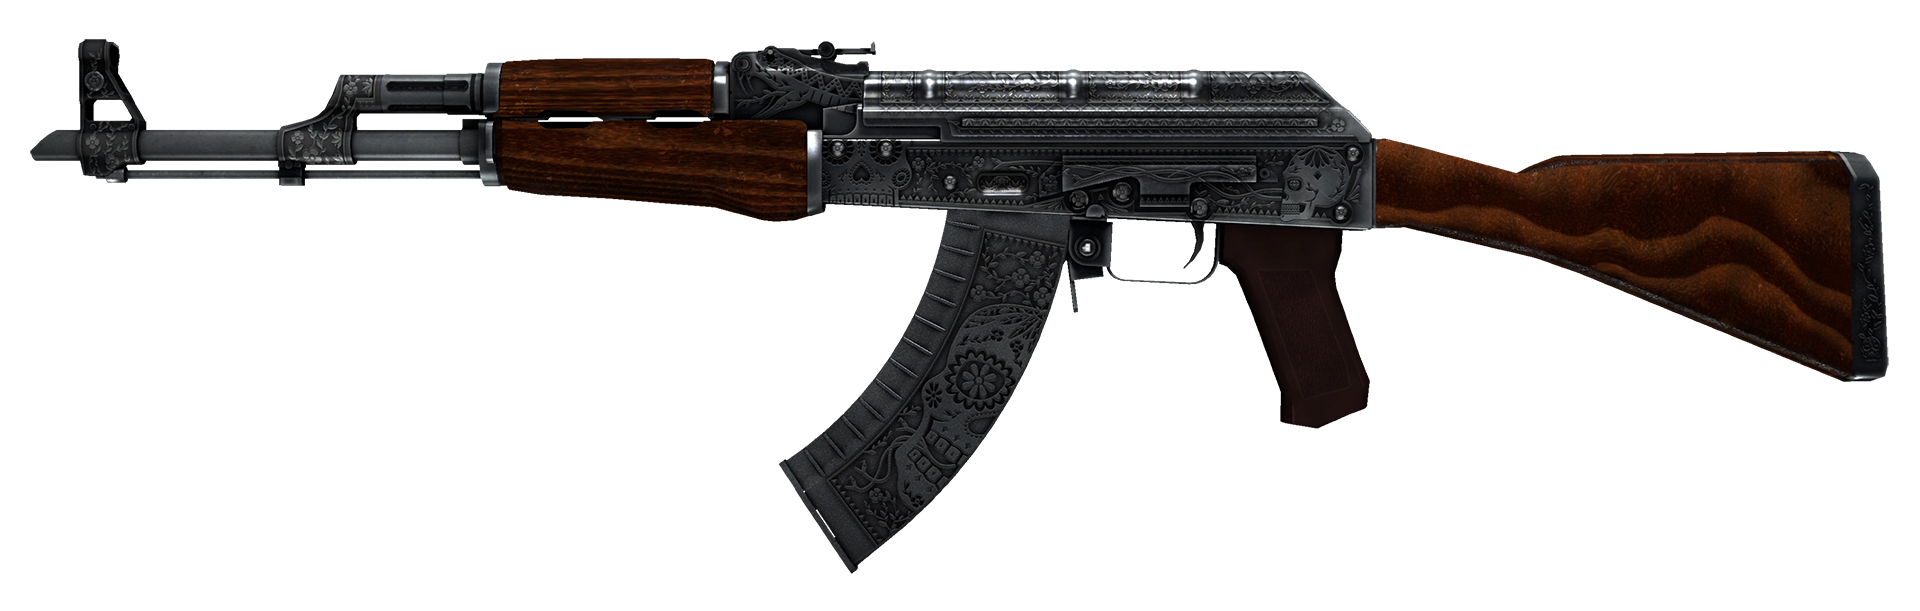 AK-47 Cartel Large Rendering